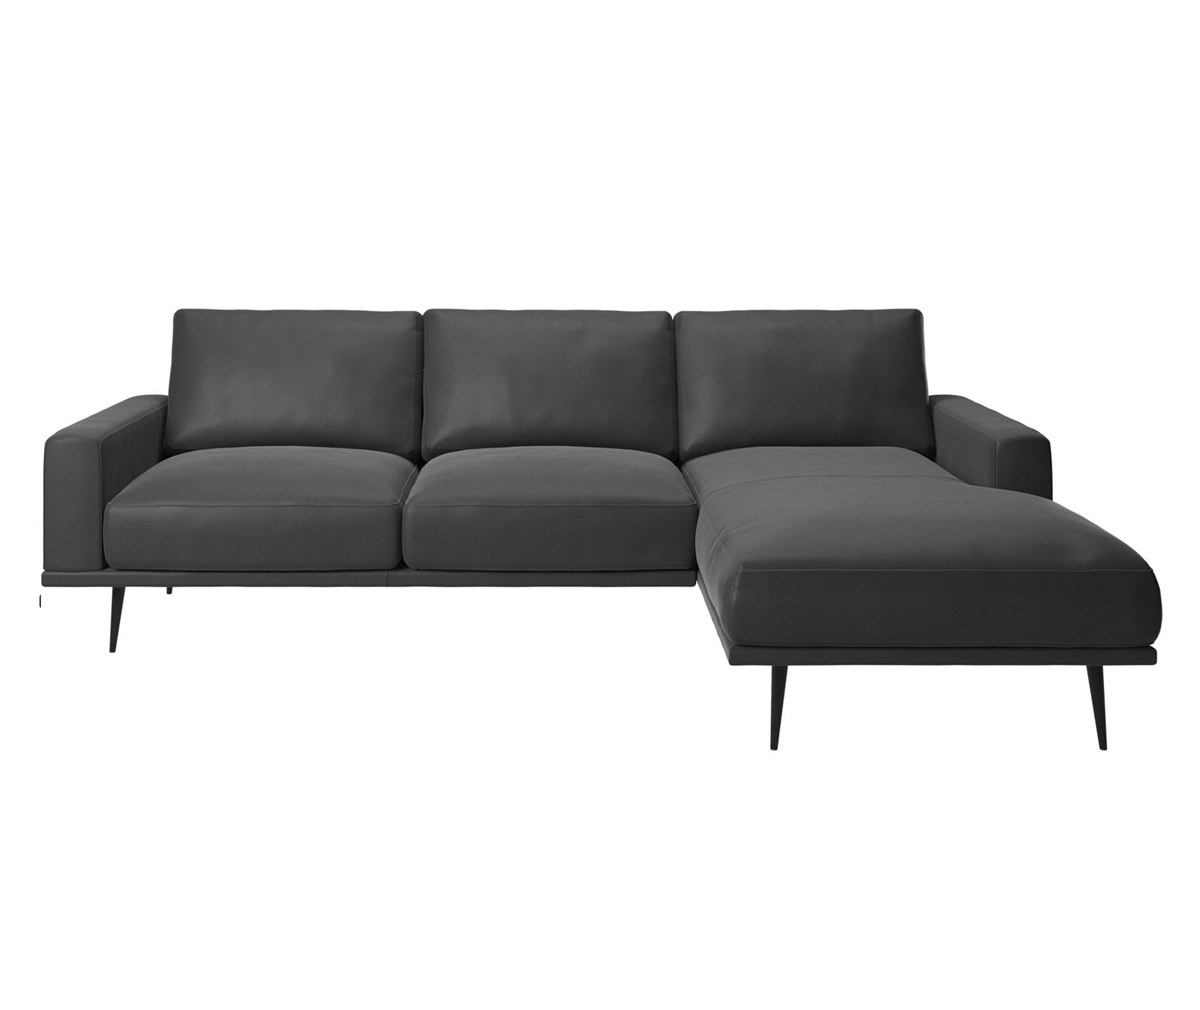 Carlton Chaise Sofa